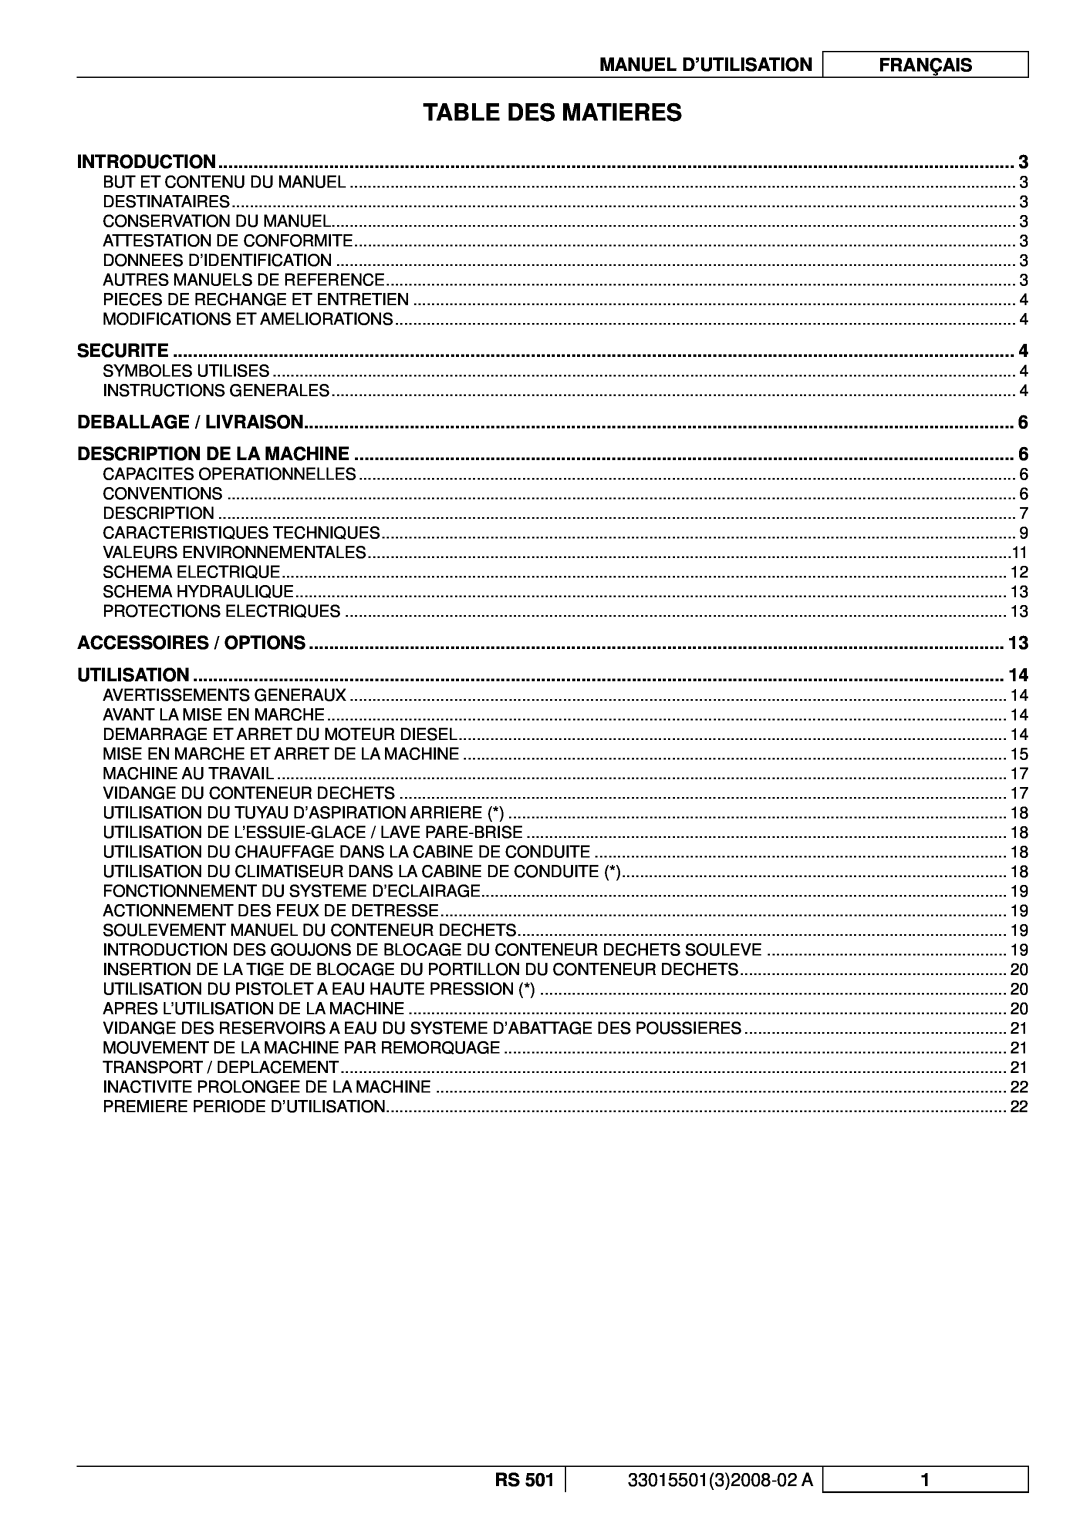 Nilfisk-ALTO RS 501 manuel dutilisation Table Des Matieres, Manuel D’Utilisation, Français 